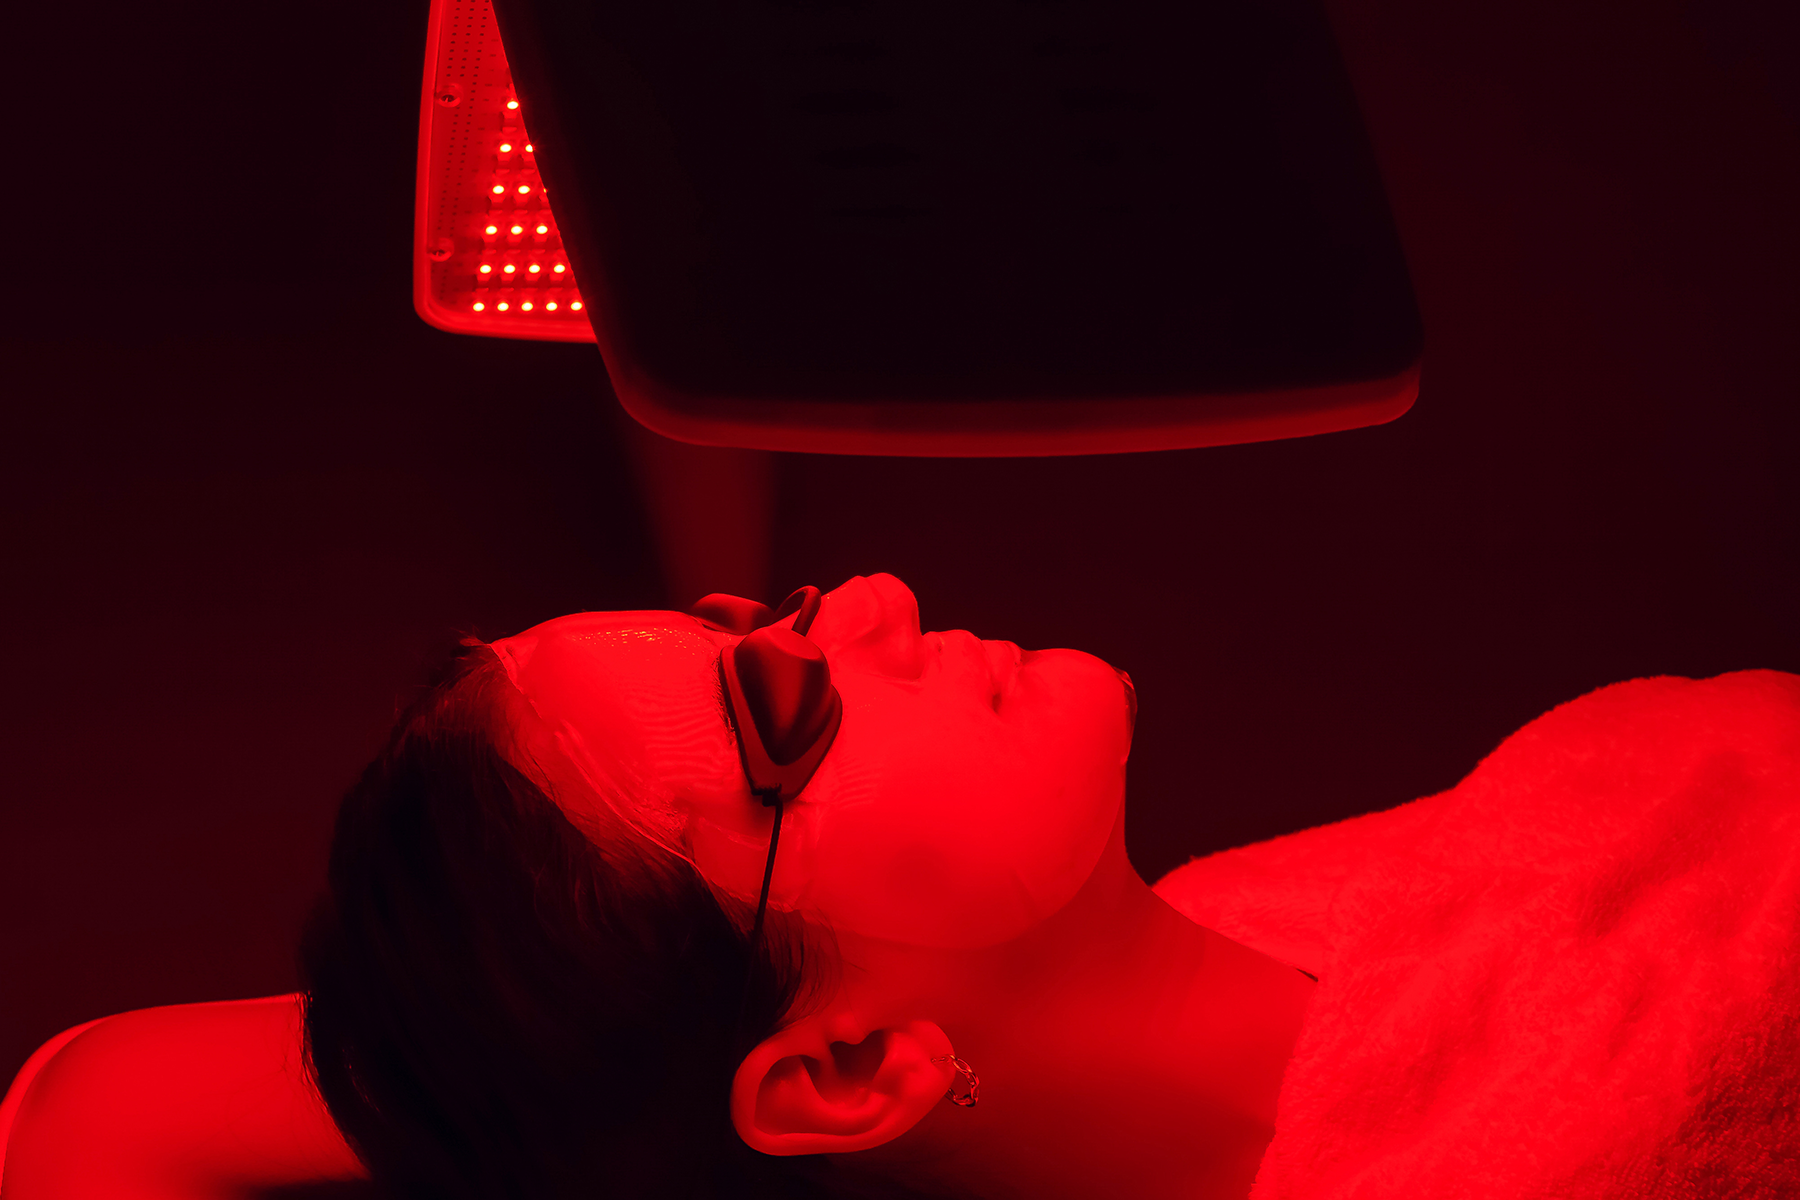 ▷ Terapia luz roja: ¿Qué es y qué beneficios tiene?